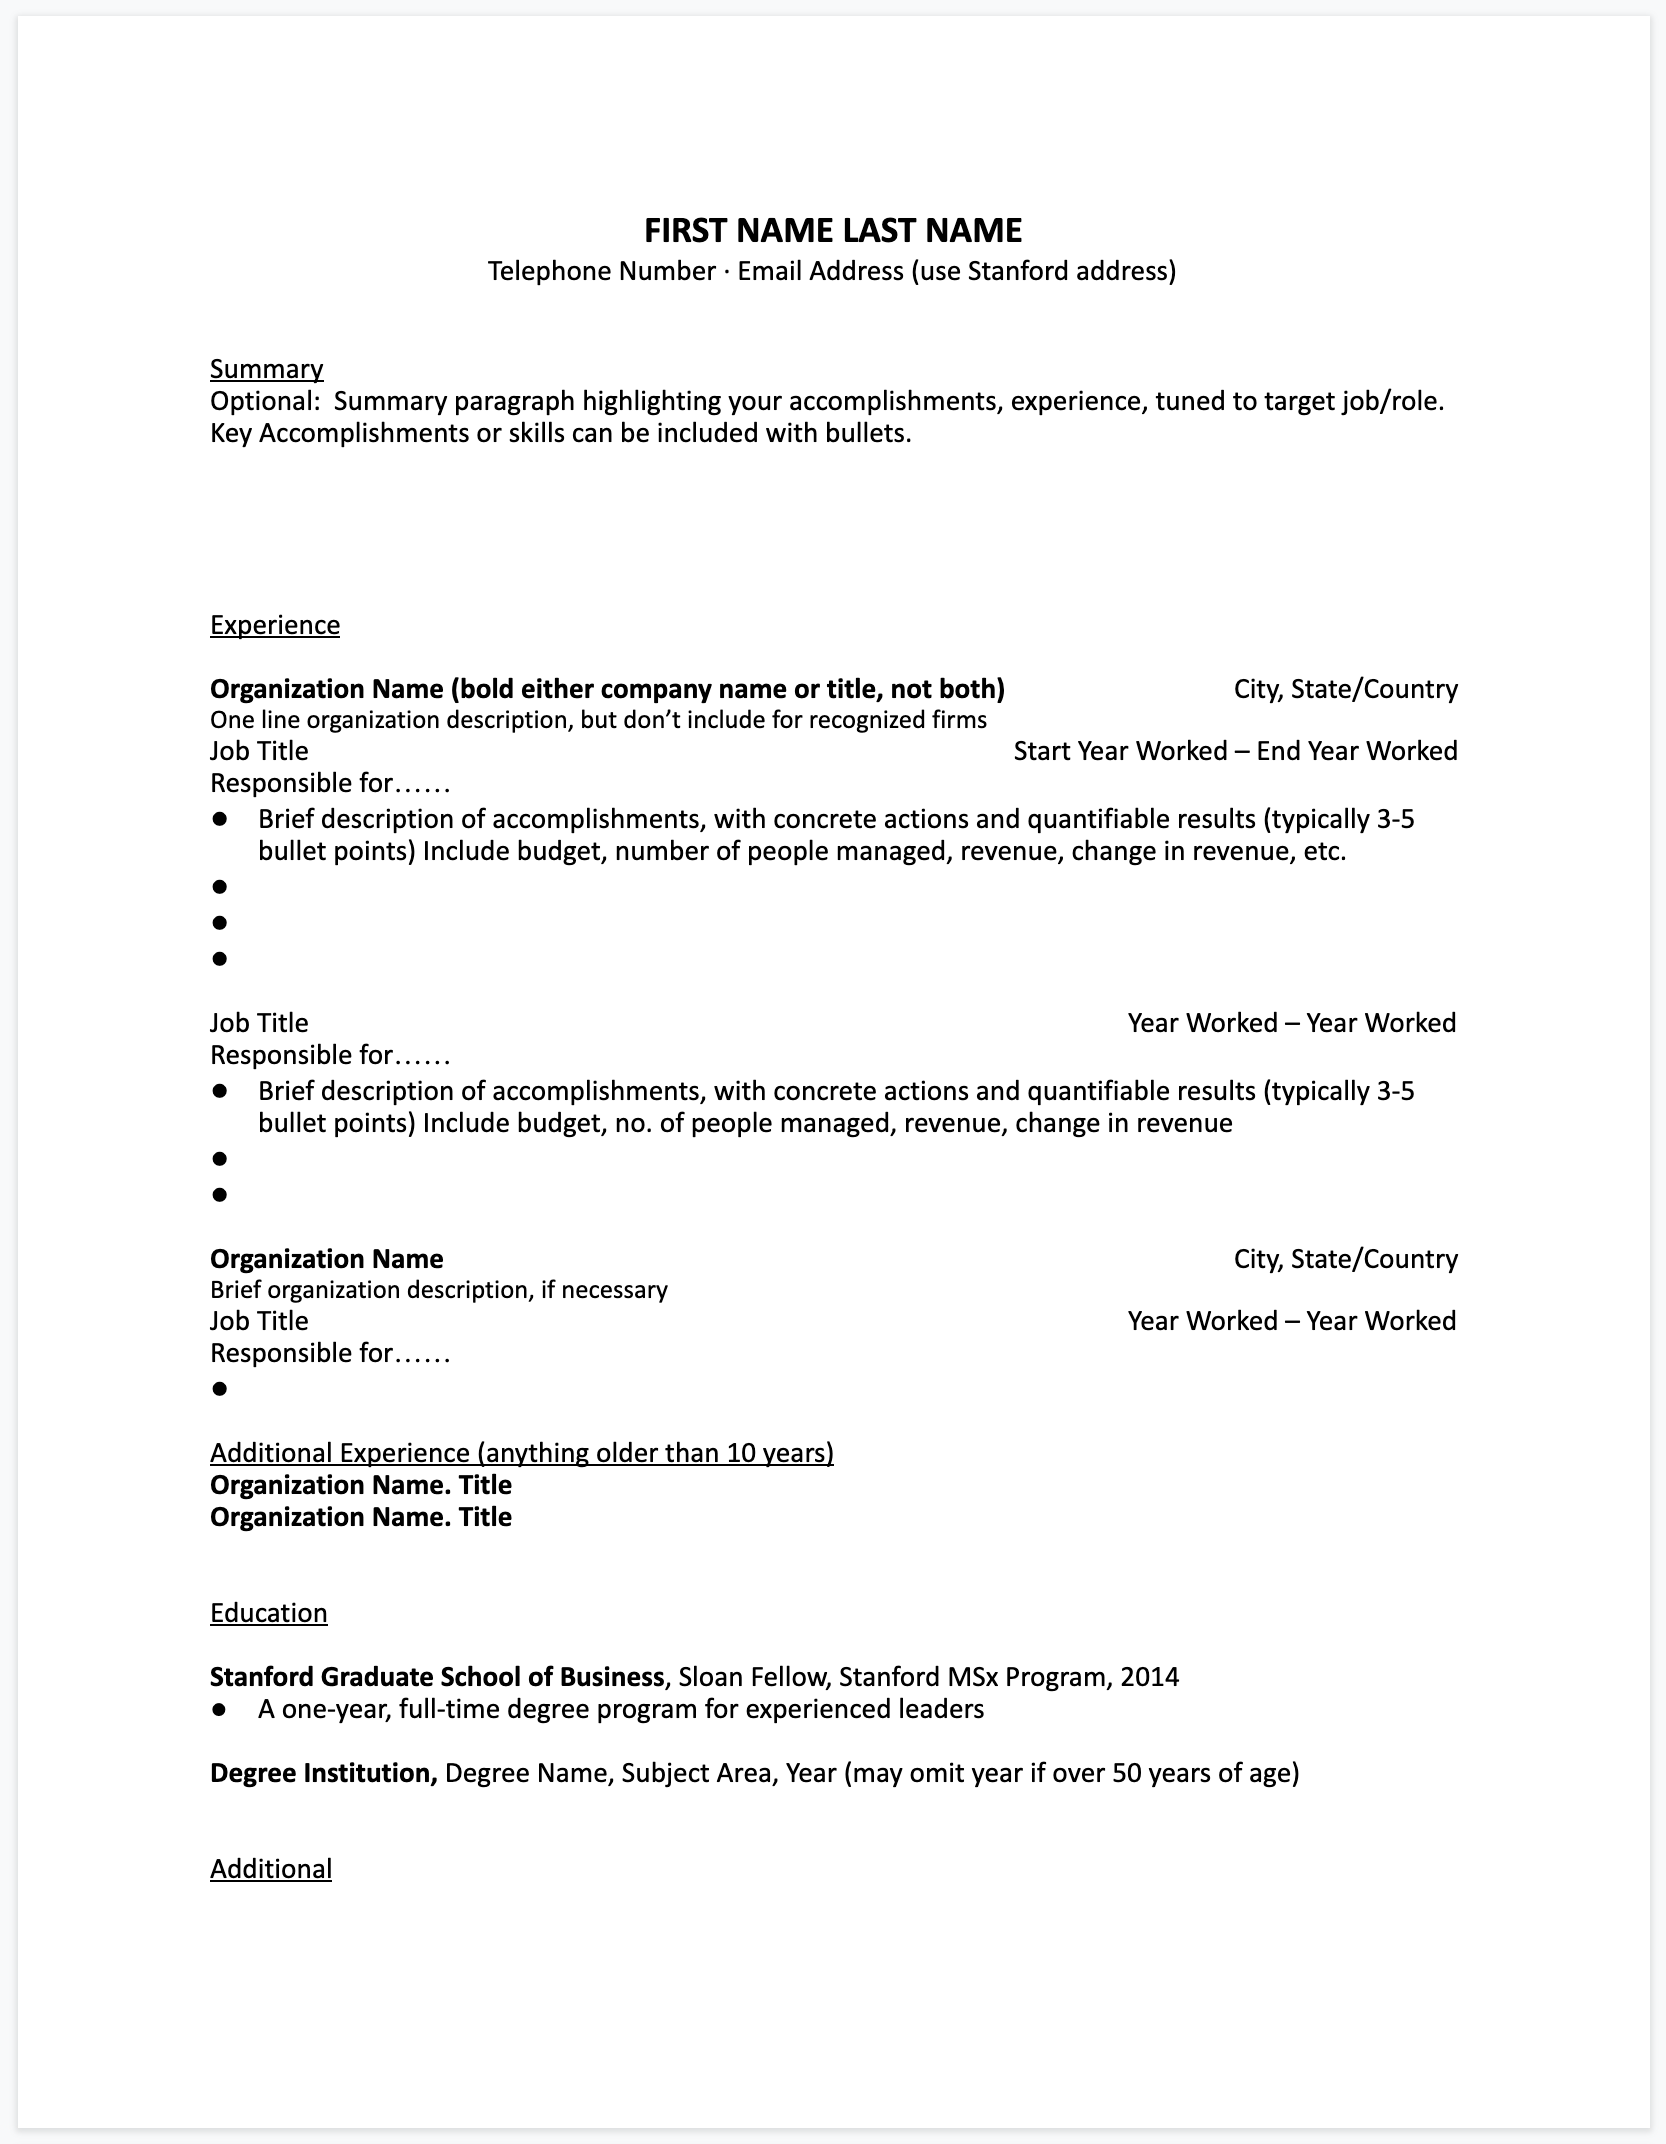 resume-format-resume-cover-letter-sample-harvard